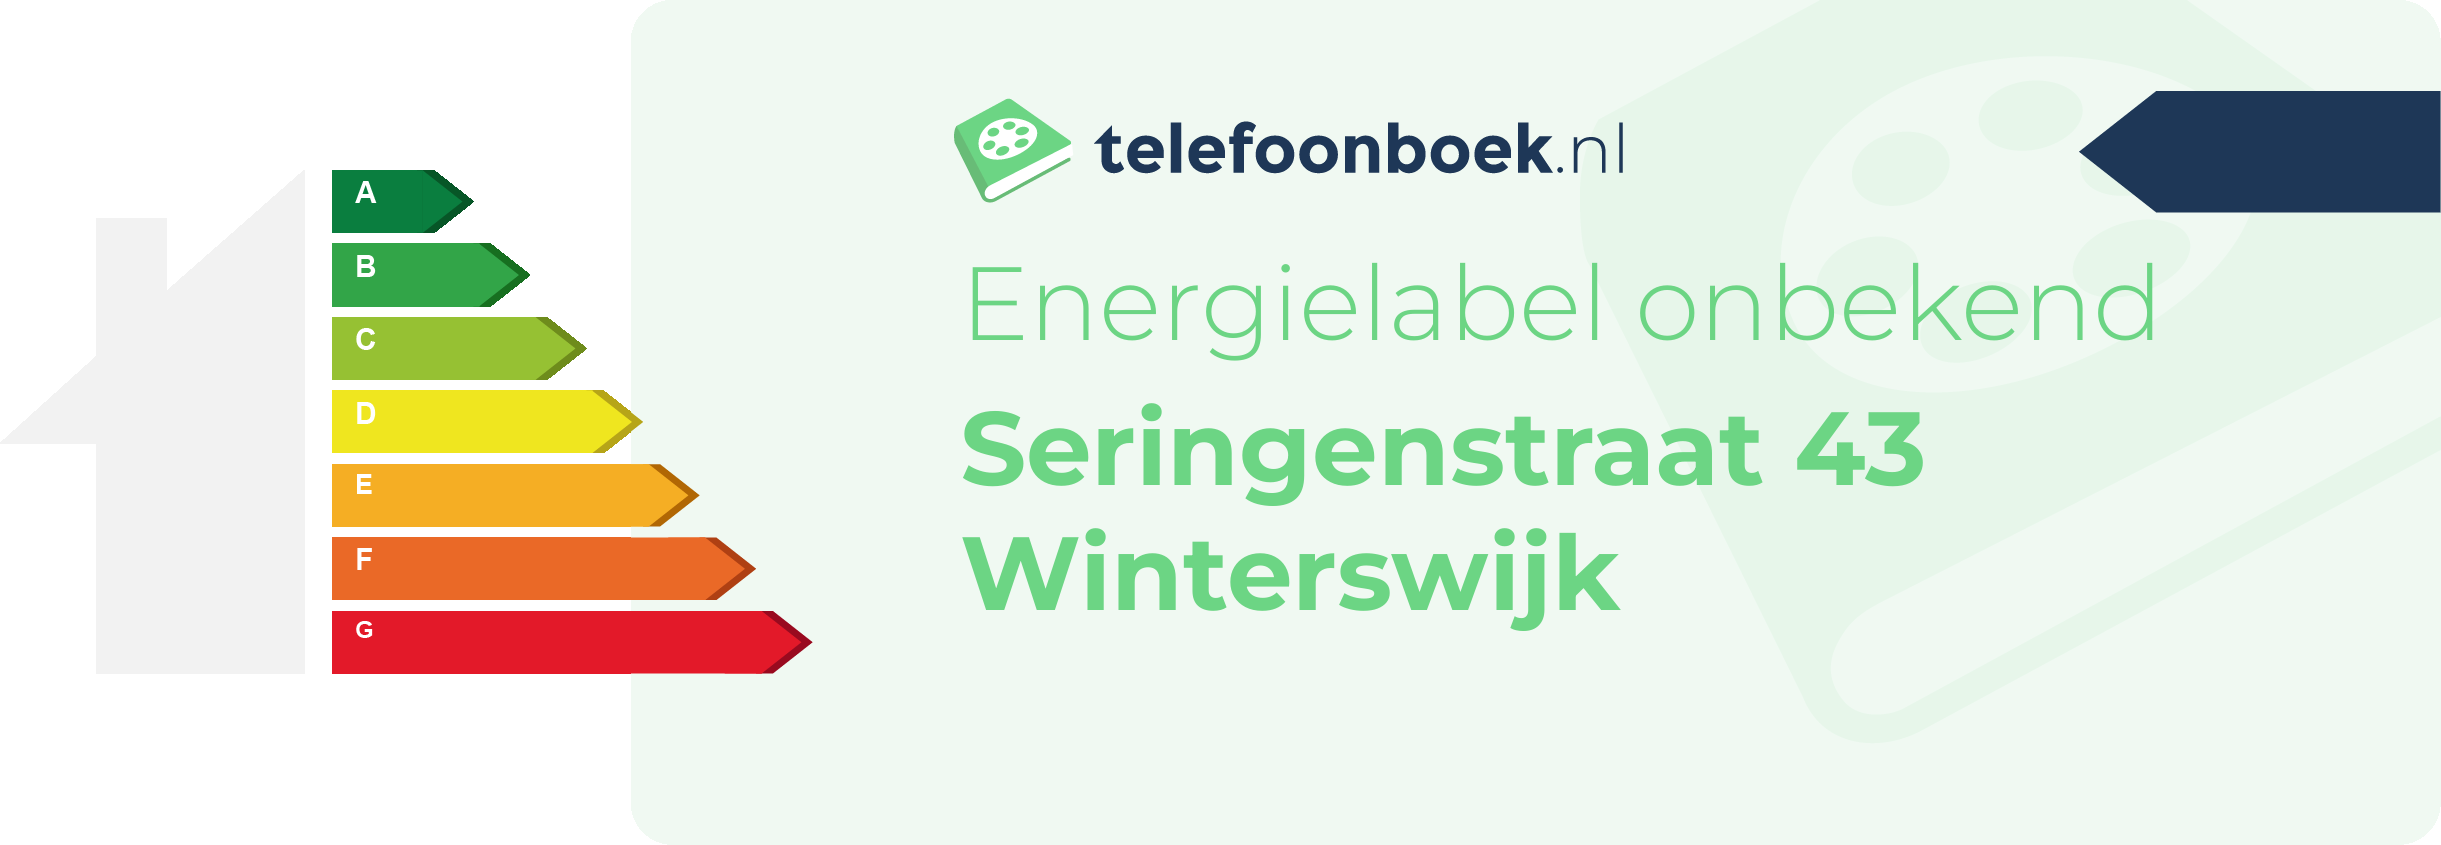 Energielabel Seringenstraat 43 Winterswijk